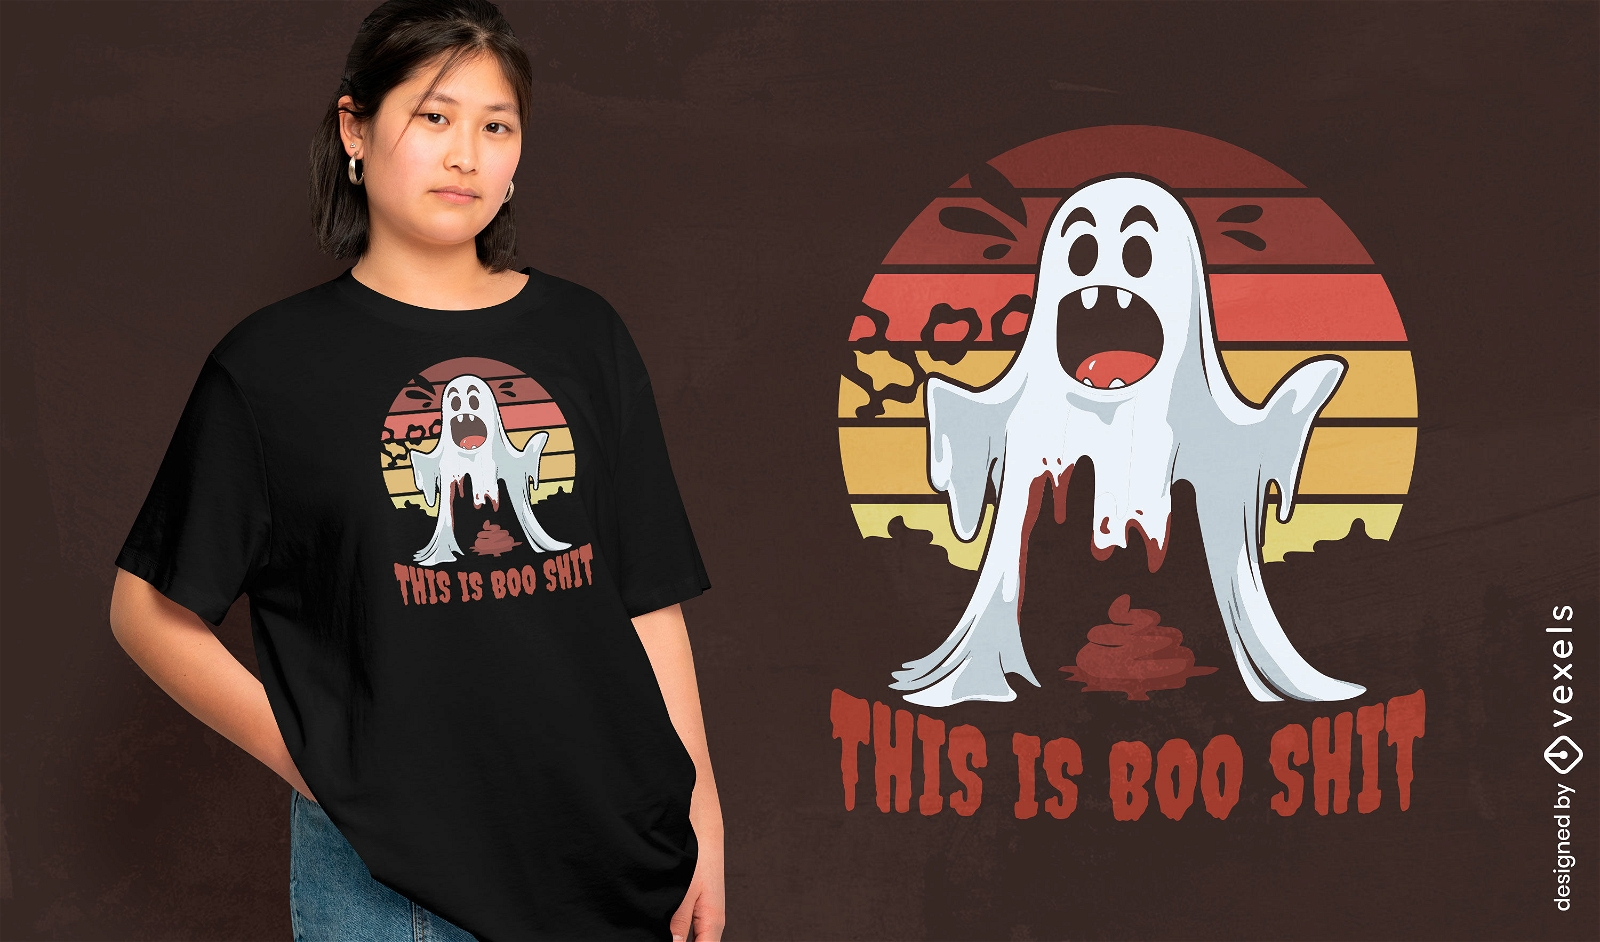 Humorous ghost t-shirt design